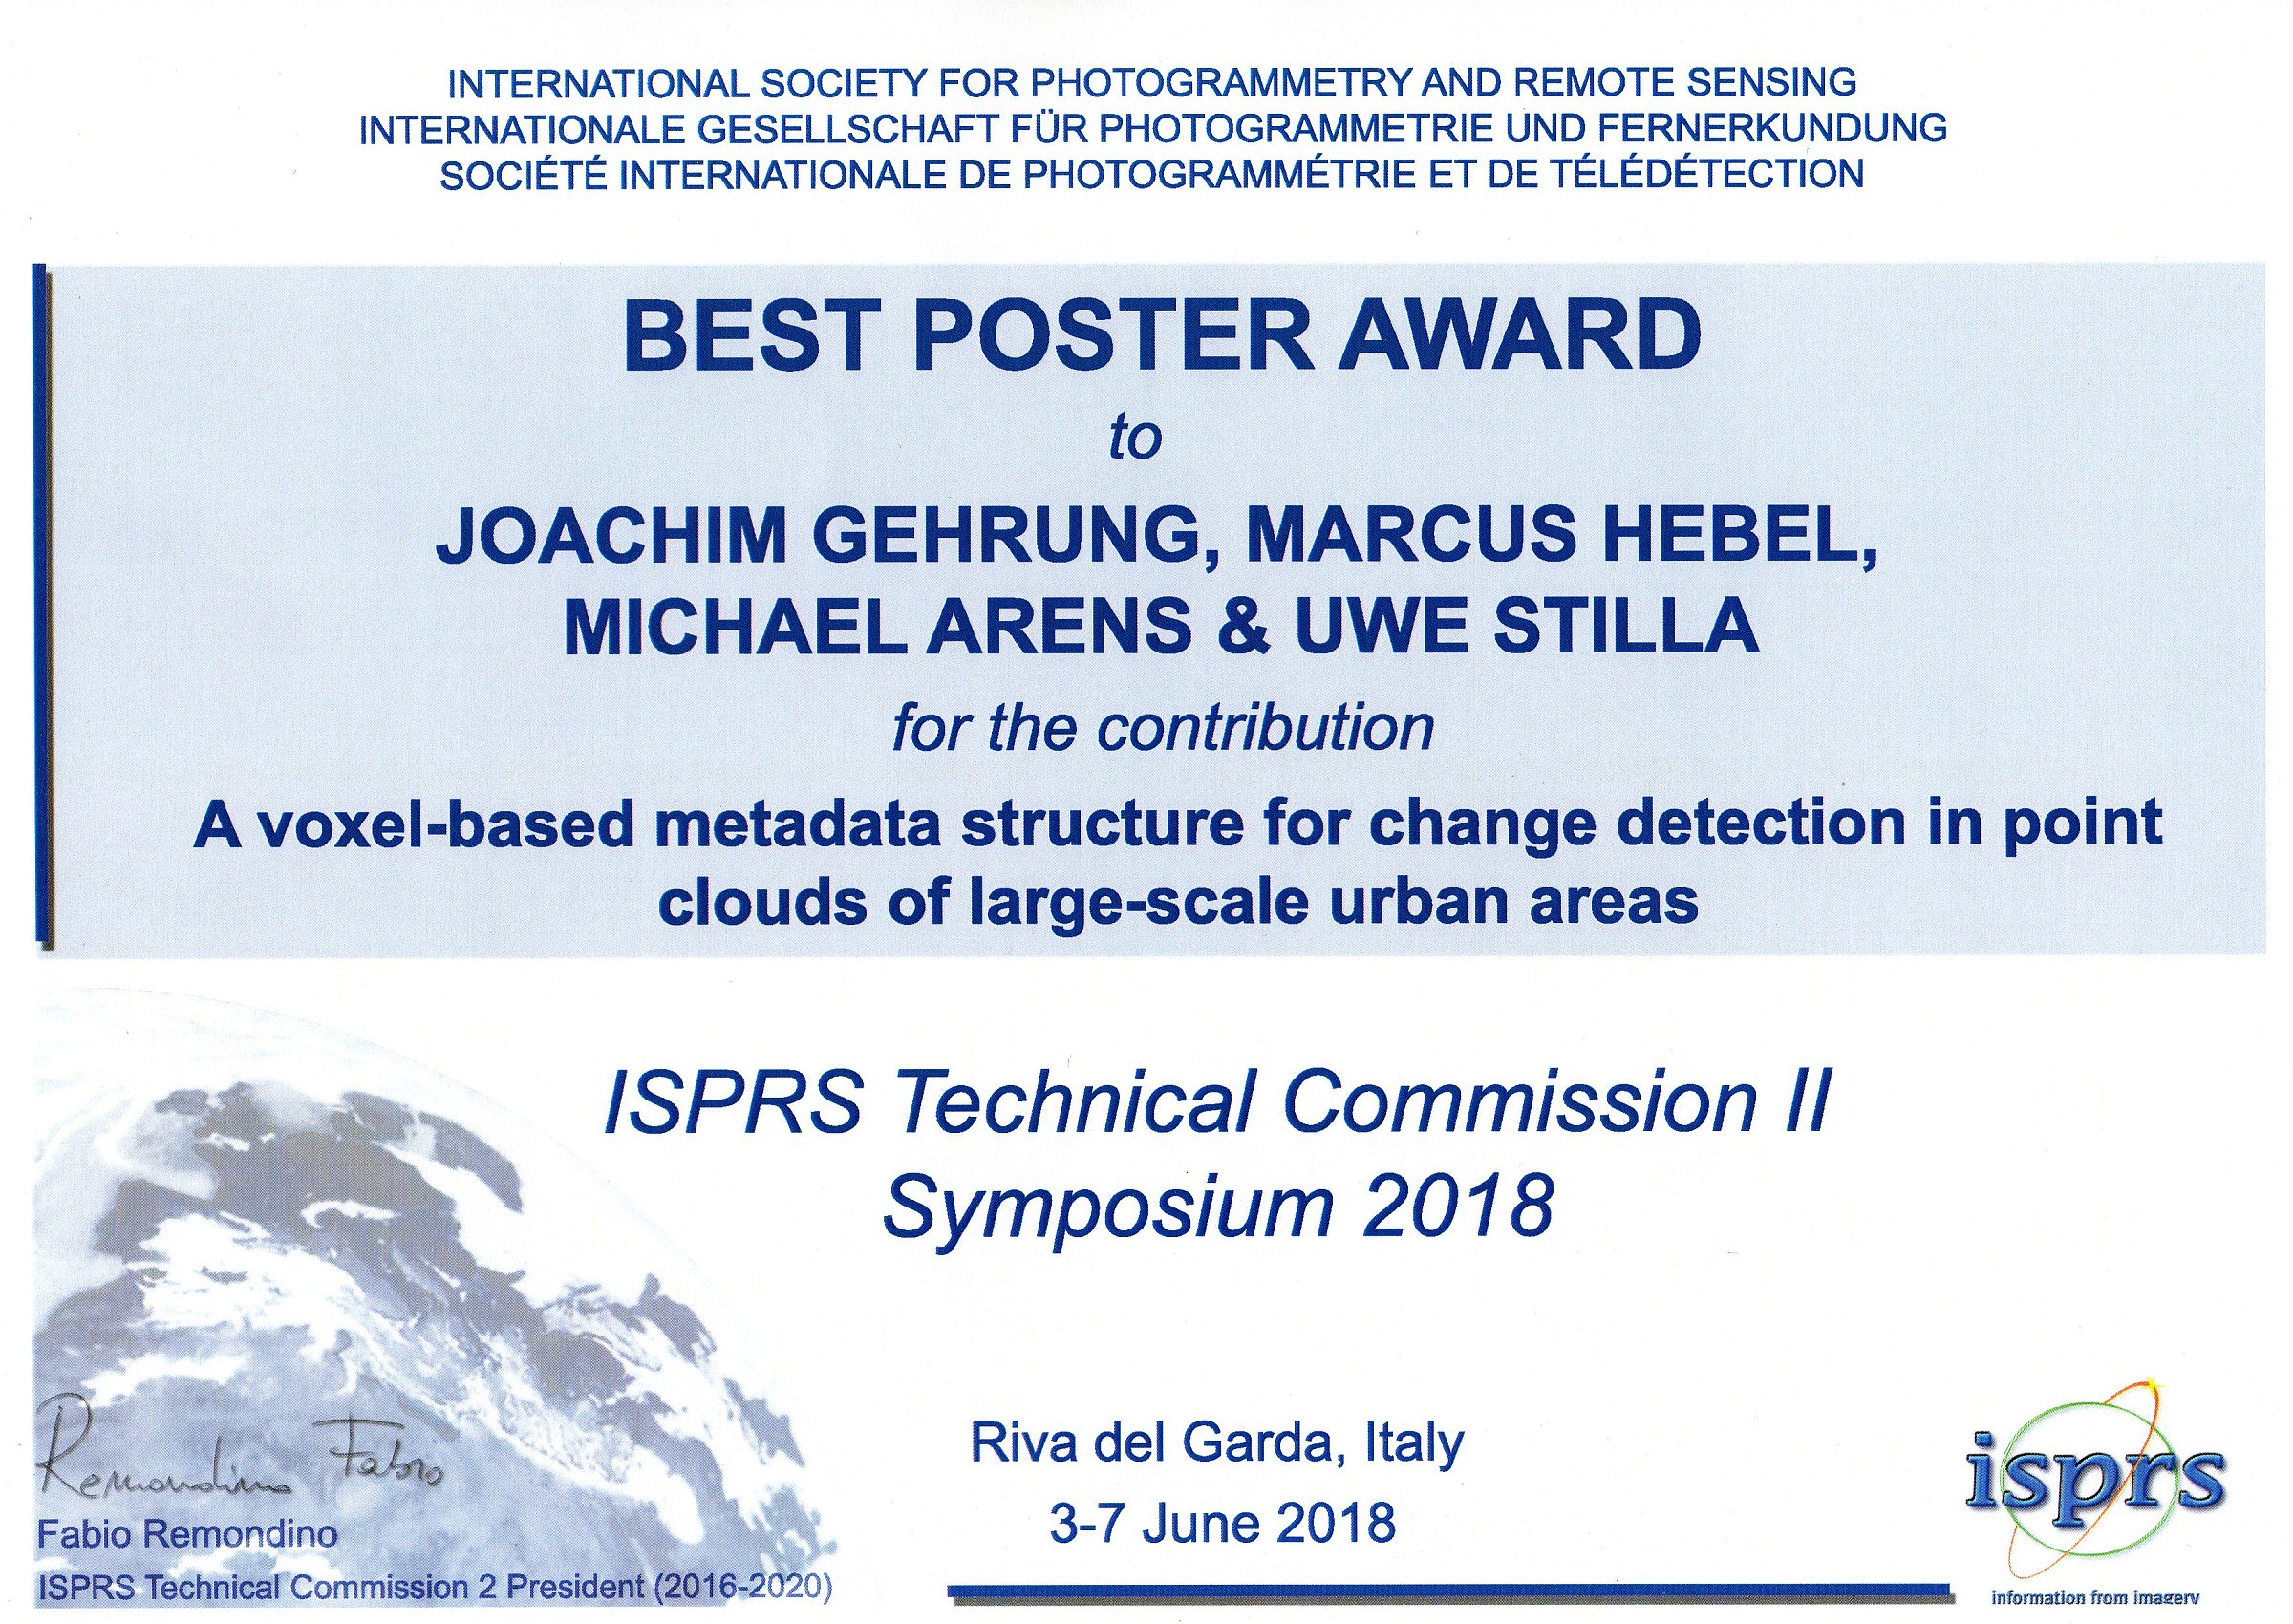 Gehrung et al. (2018) Best Poster Award